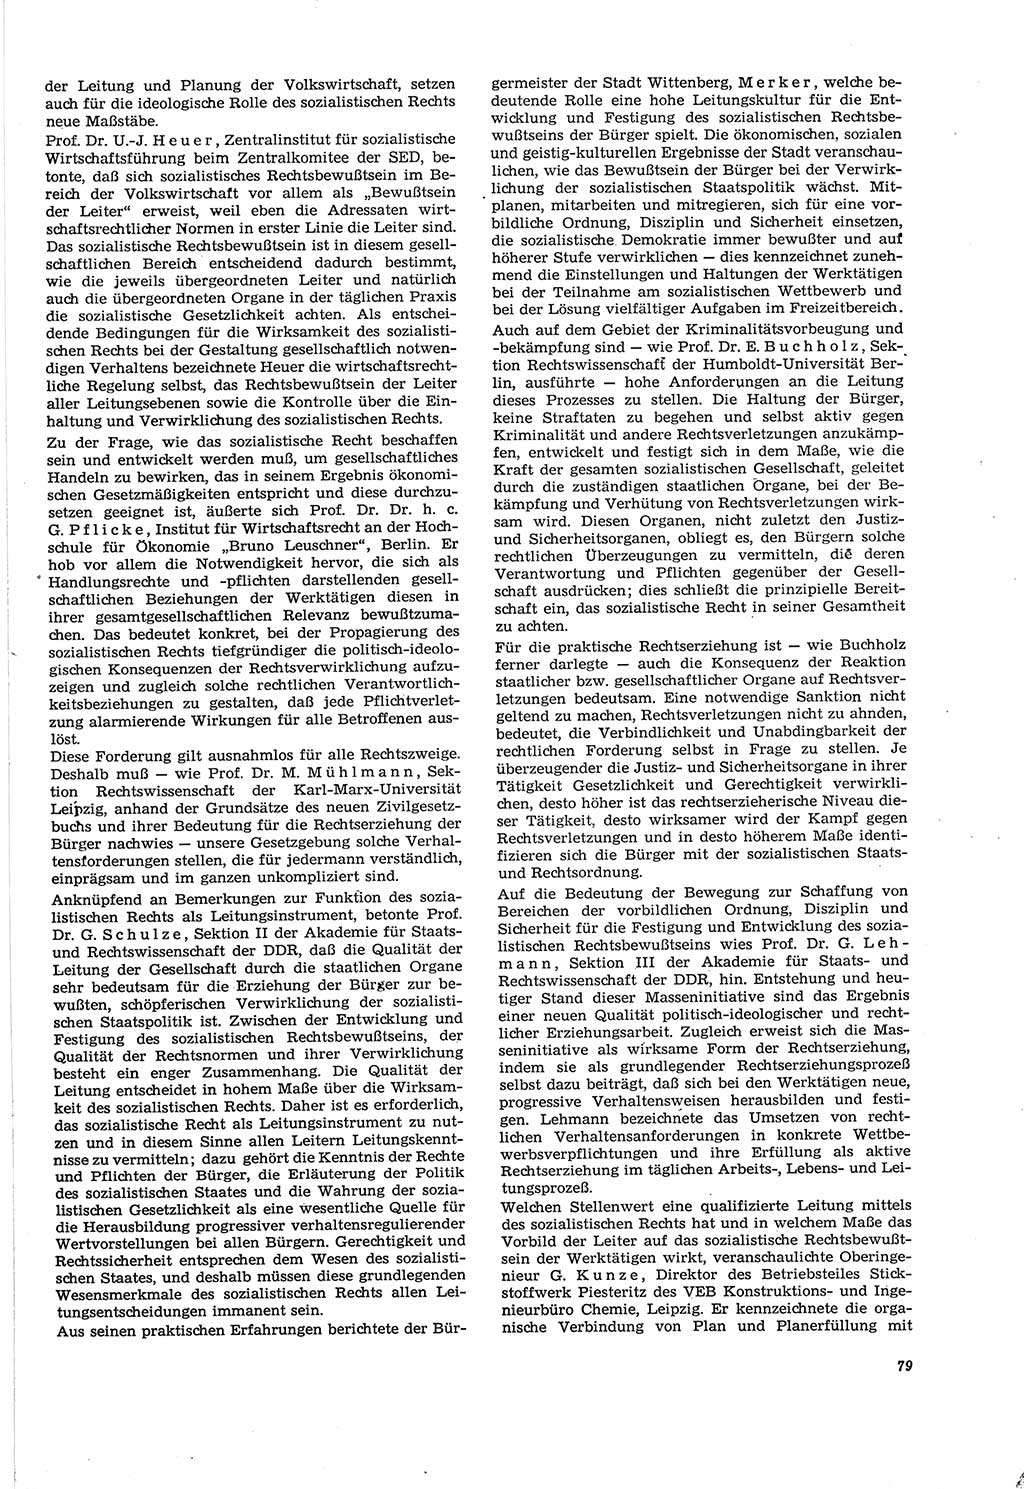 Neue Justiz (NJ), Zeitschrift für Recht und Rechtswissenschaft [Deutsche Demokratische Republik (DDR)], 30. Jahrgang 1976, Seite 79 (NJ DDR 1976, S. 79)